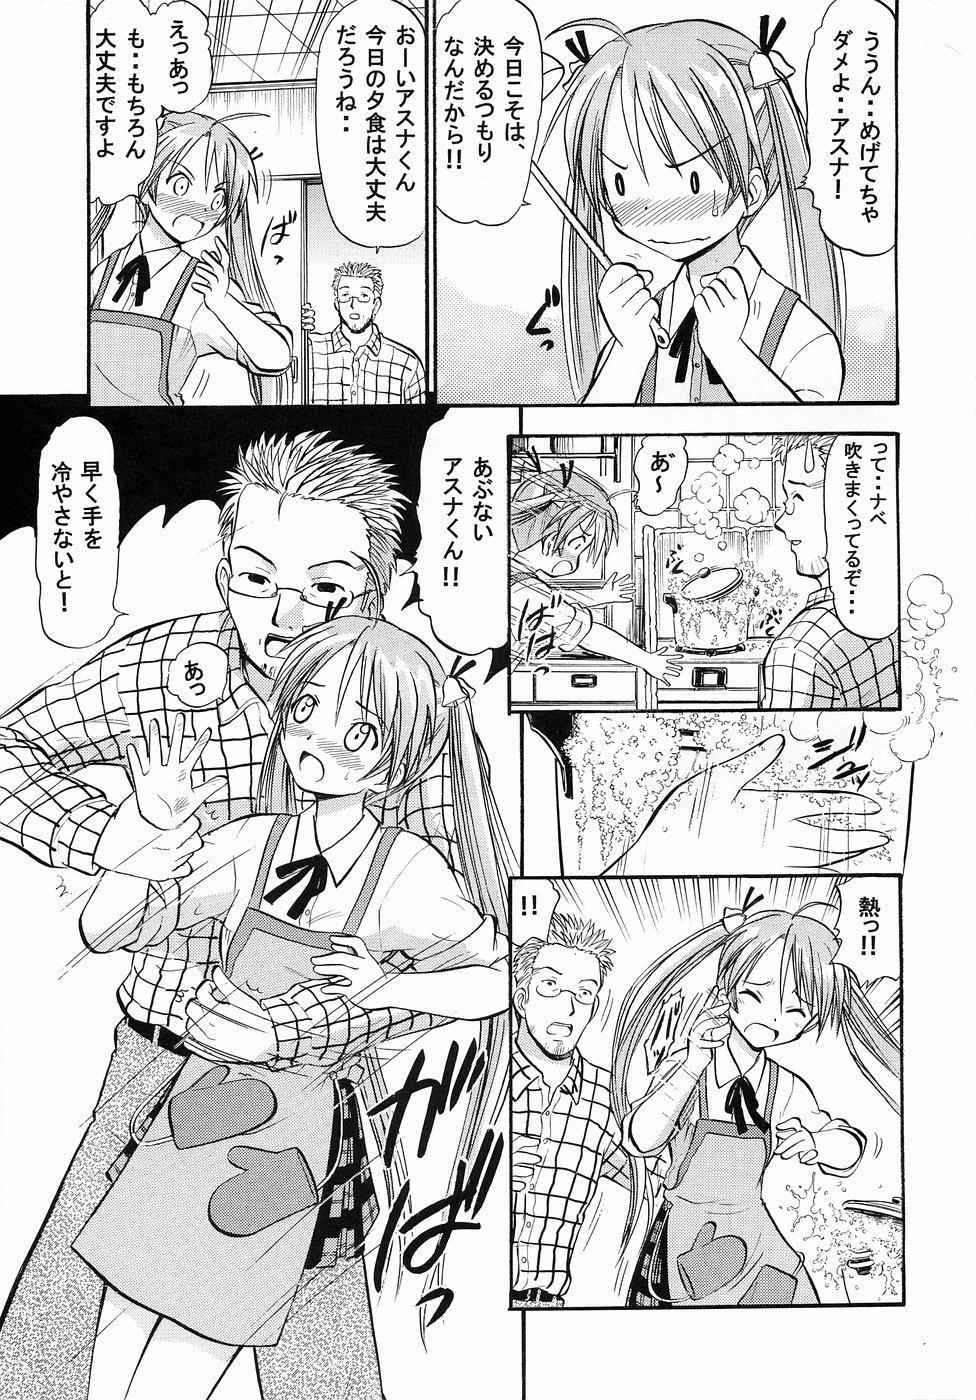 Jockstrap Asuna no Koi Suru Heart - Mahou sensei negima Hot Mom - Page 4